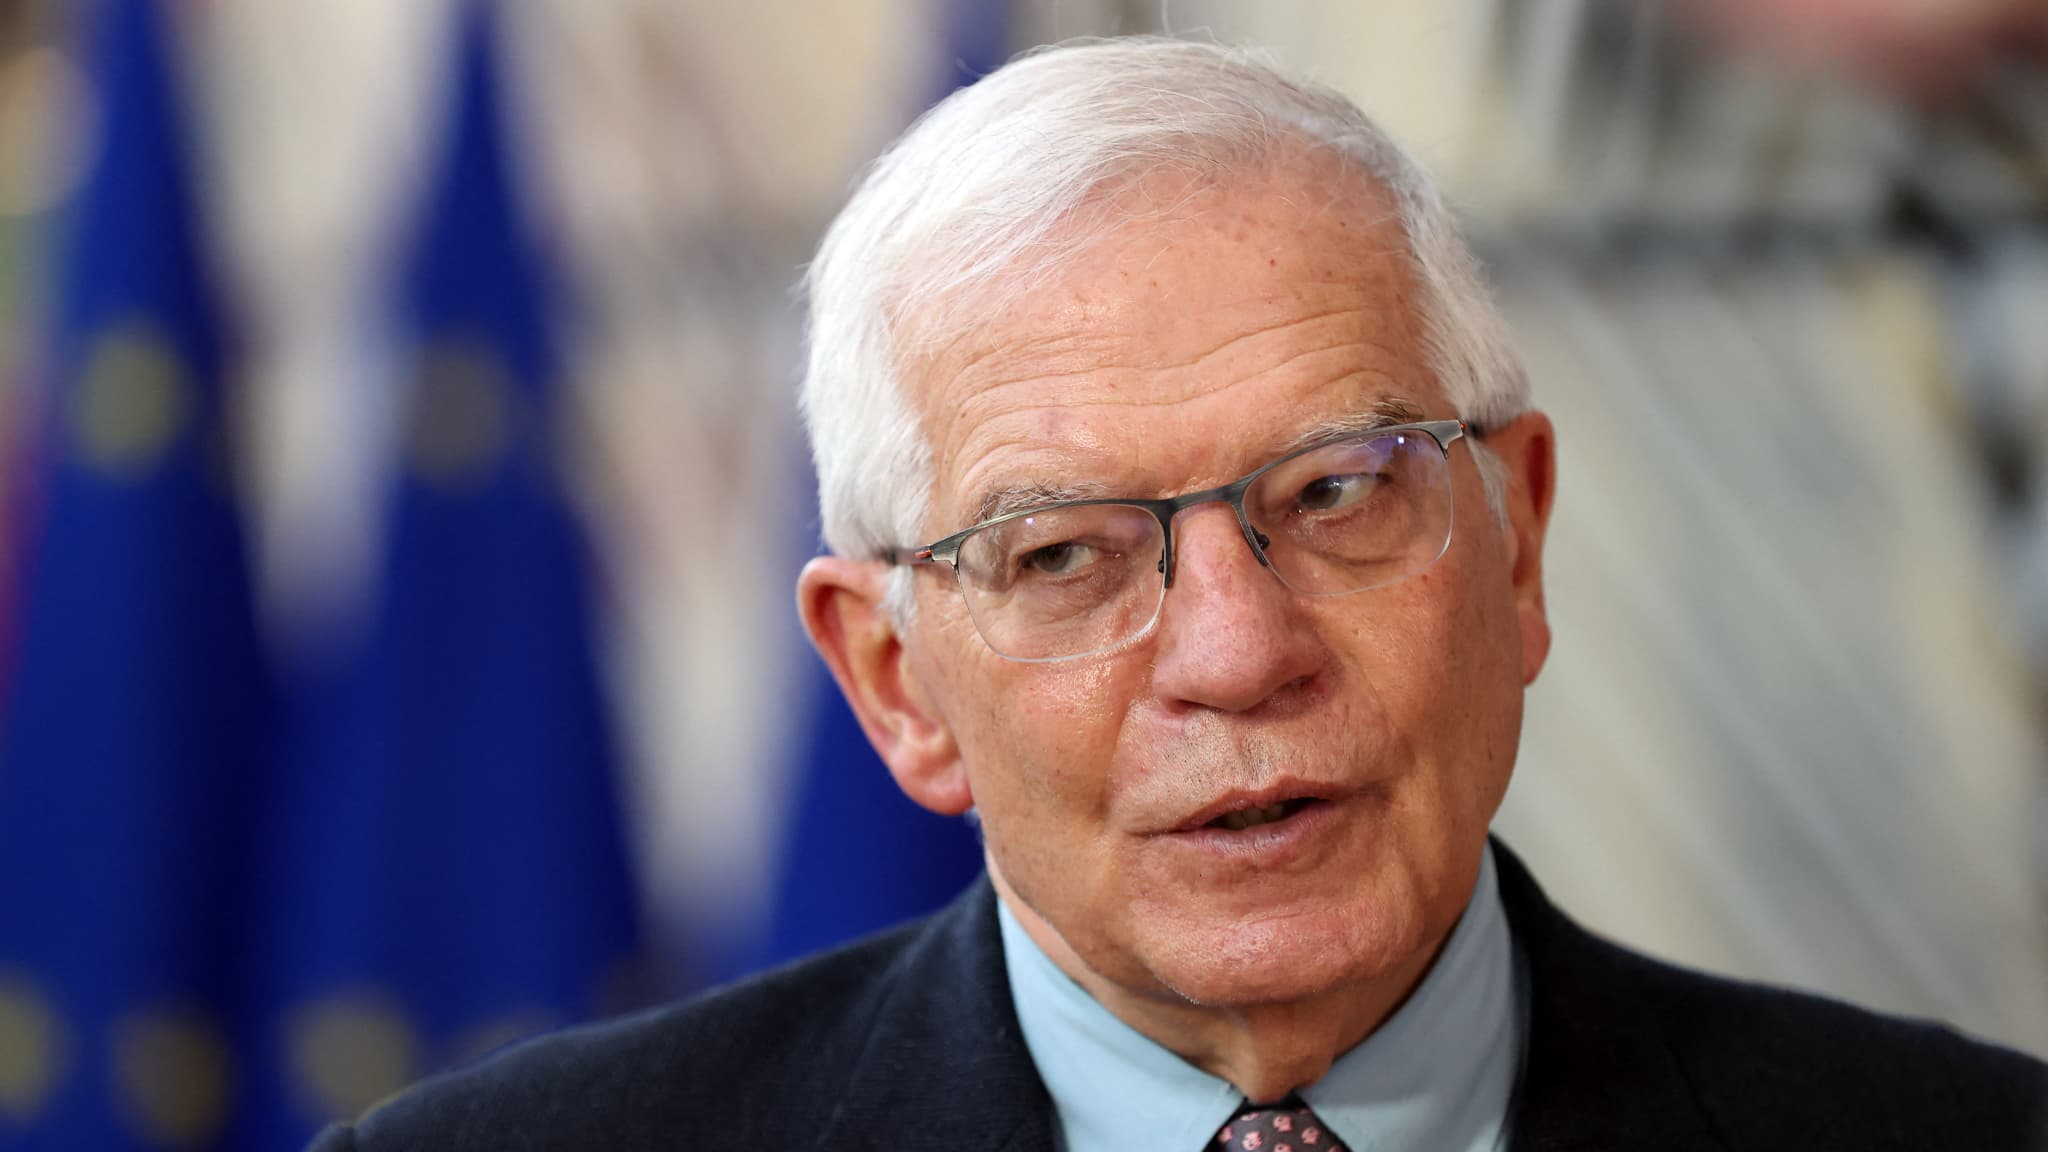 De Europese Unie spreekt niet langer over het opschorten van het hulpprogramma voor de Palestijnen